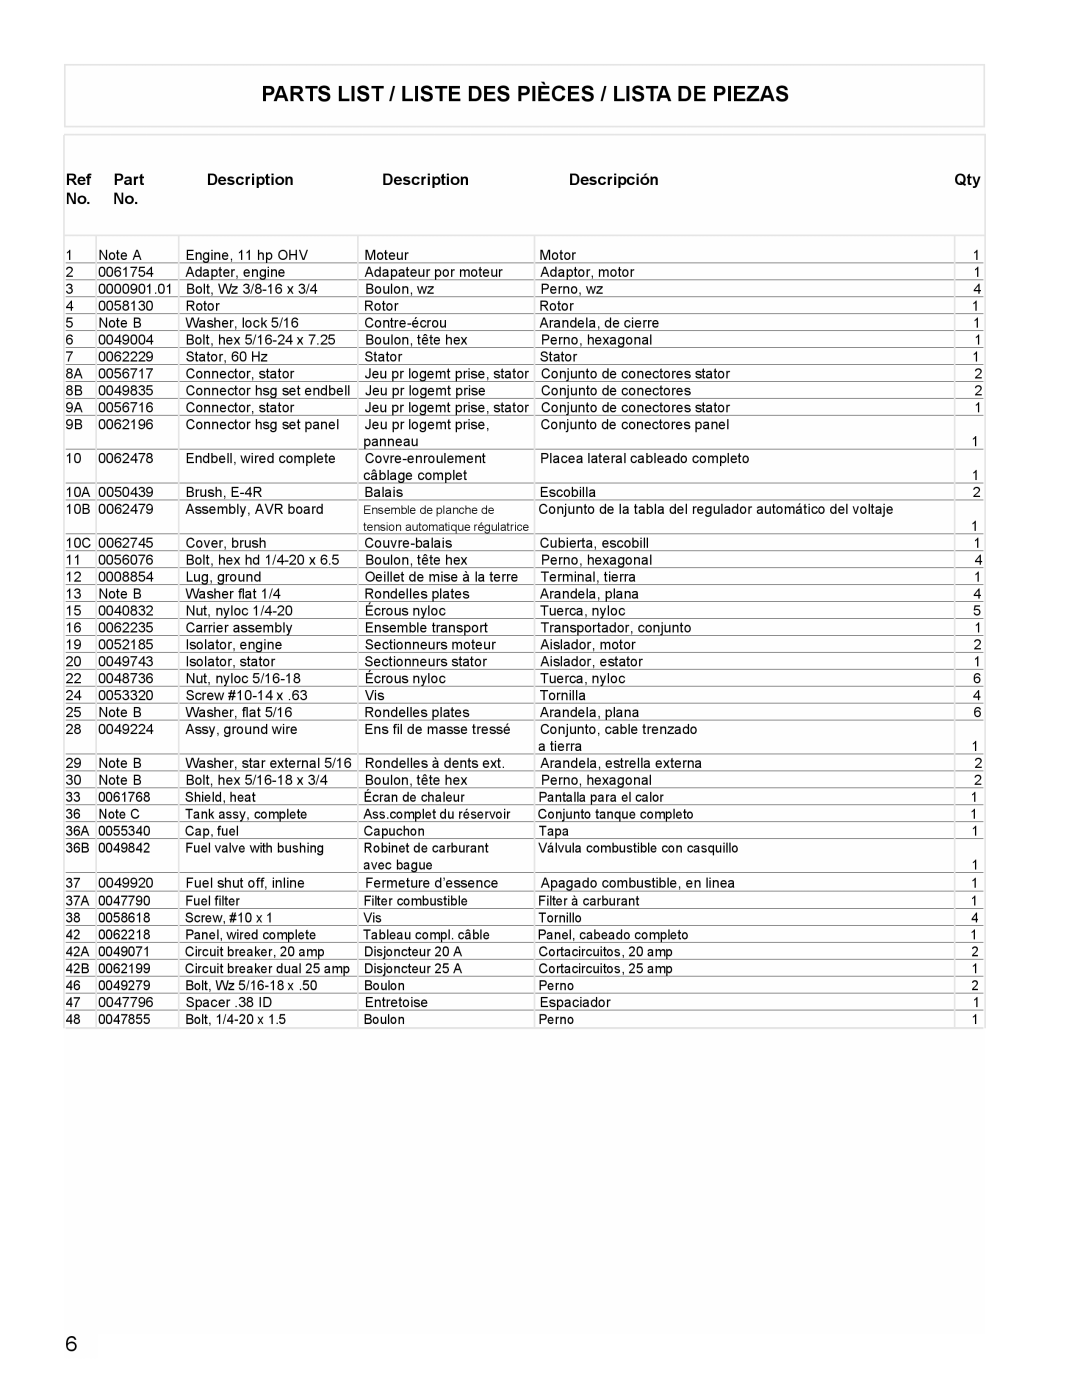 Powermate PC0525300.19 manual Parts List / Liste Des Pièces / Lista De Piezas, Description, Descripción 